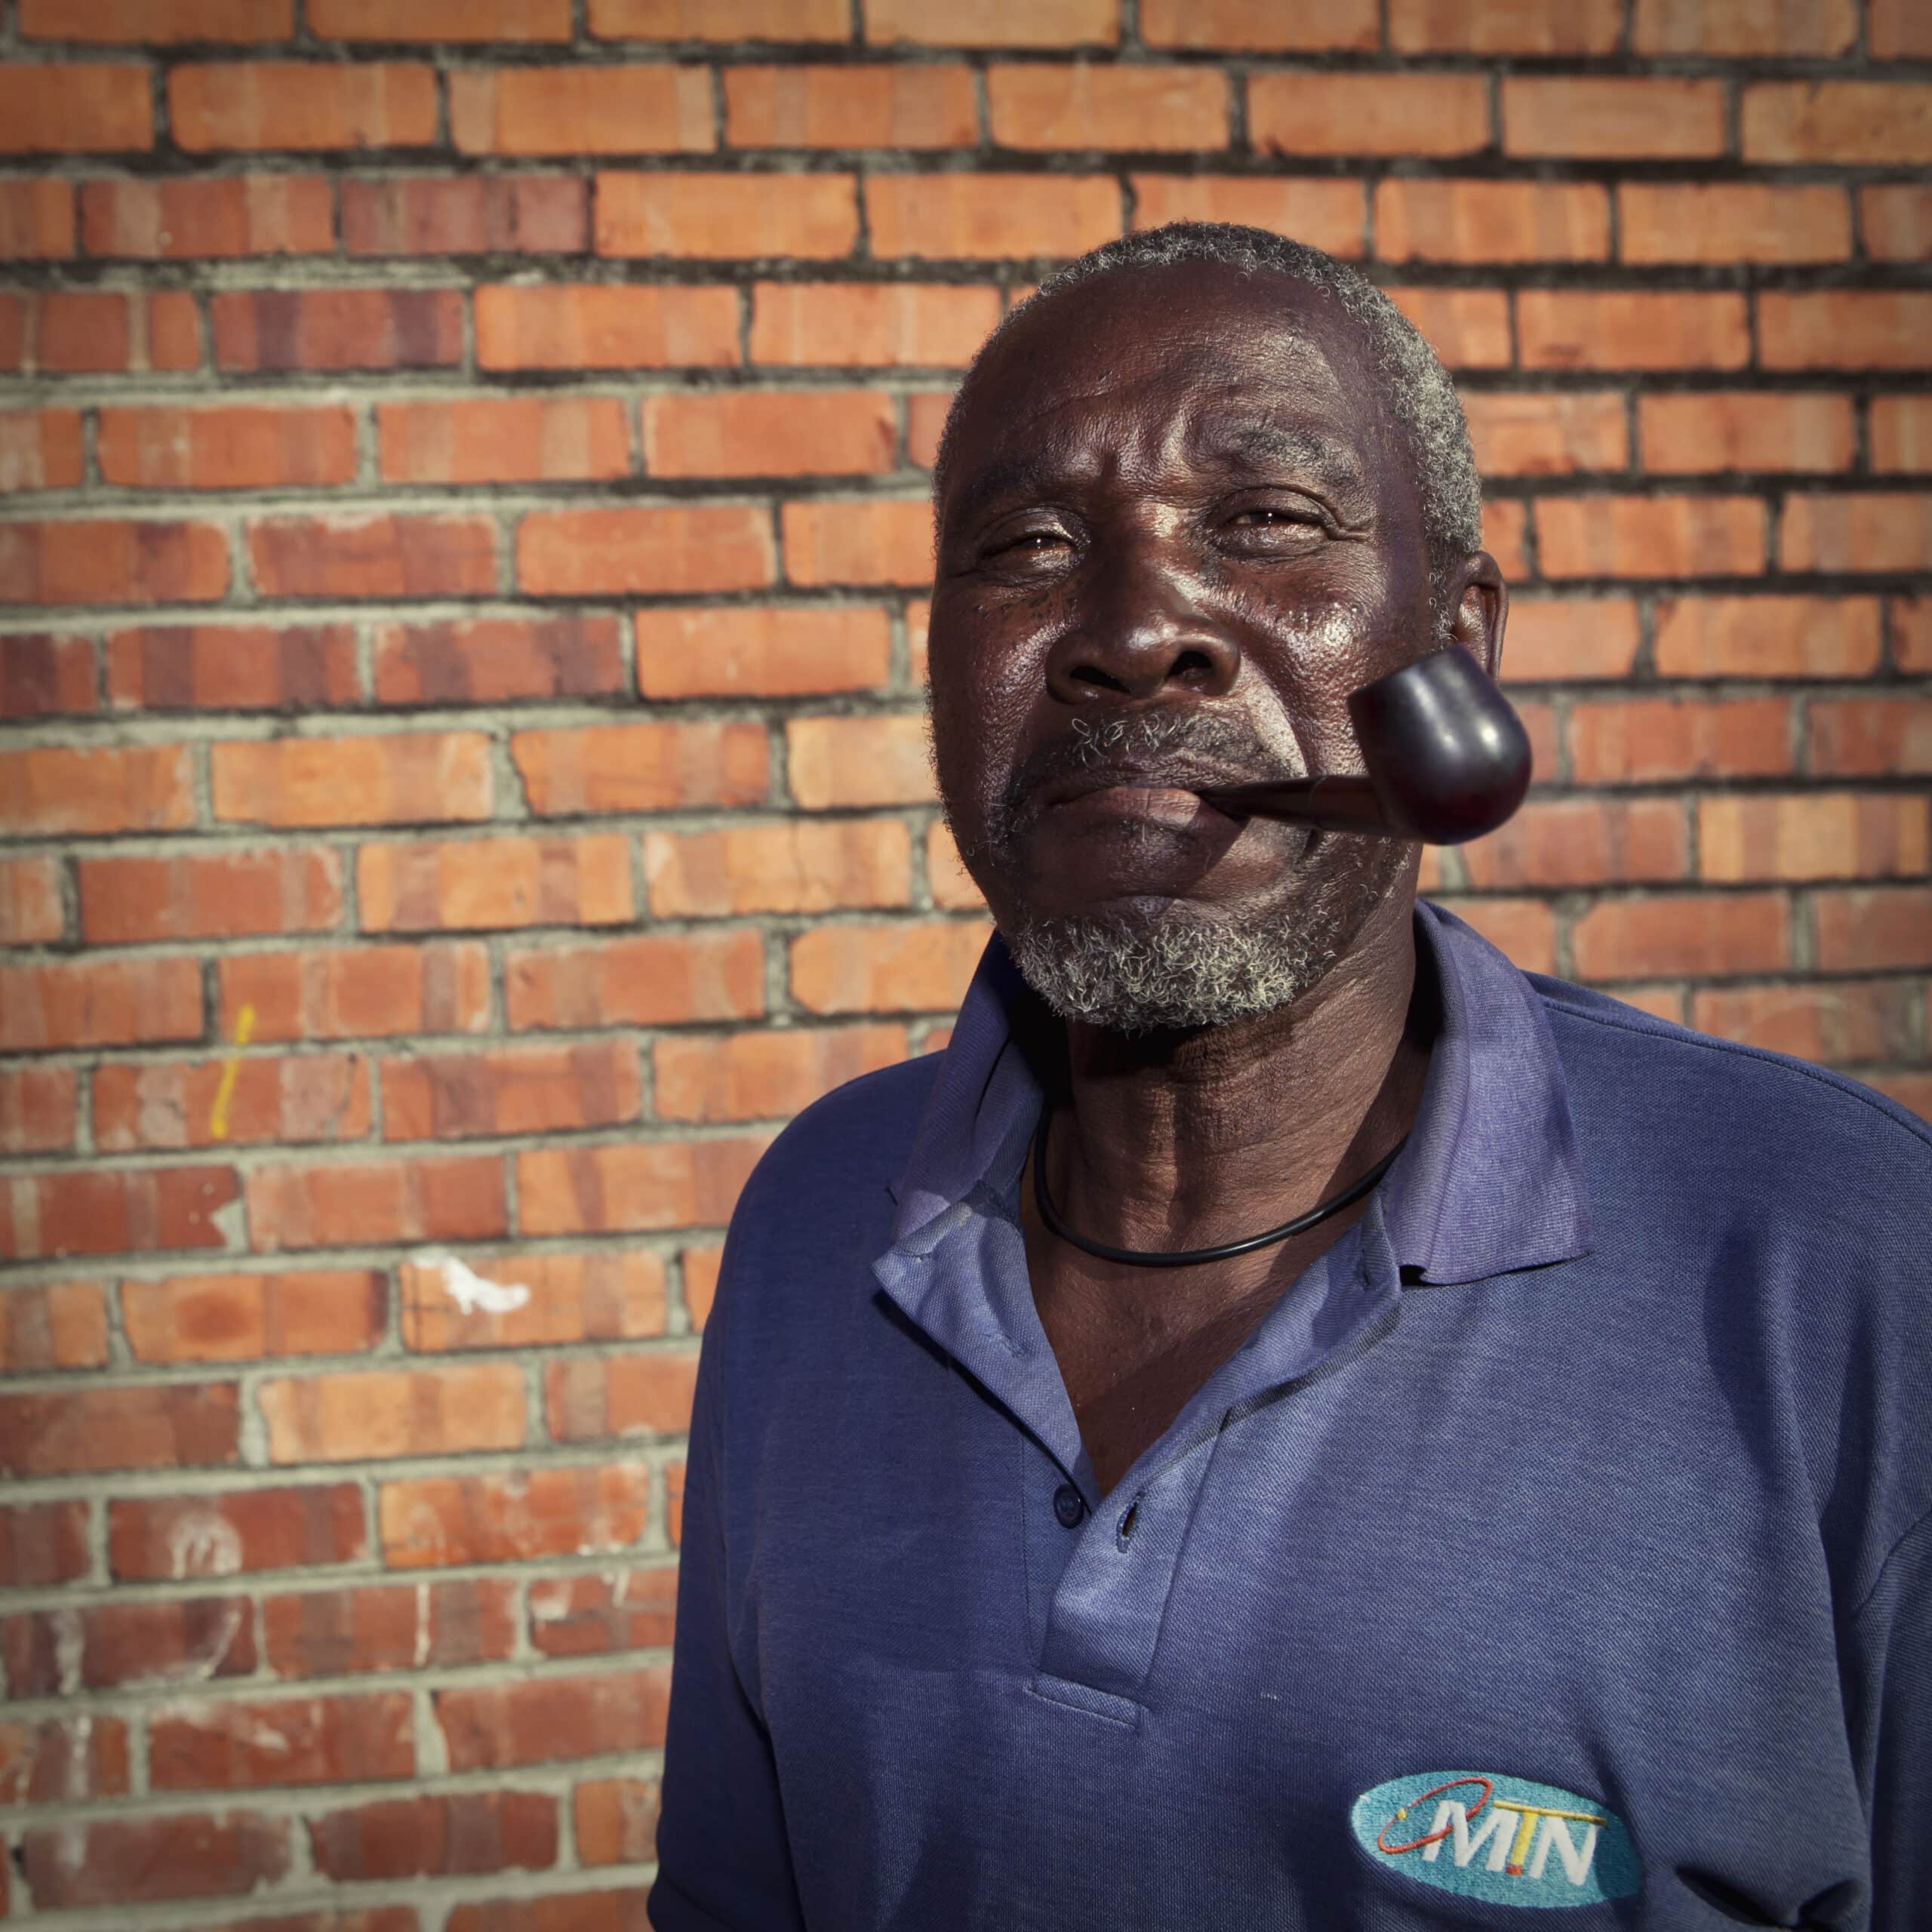 Ein älterer Mann mit verwittertem Gesichtsausdruck und grauem Haar steht vor einer Backsteinmauer und hält eine Pfeife im Mund. Er trägt ein blaues Poloshirt mit einem Logo darauf. © Fotografie Tomas Rodriguez